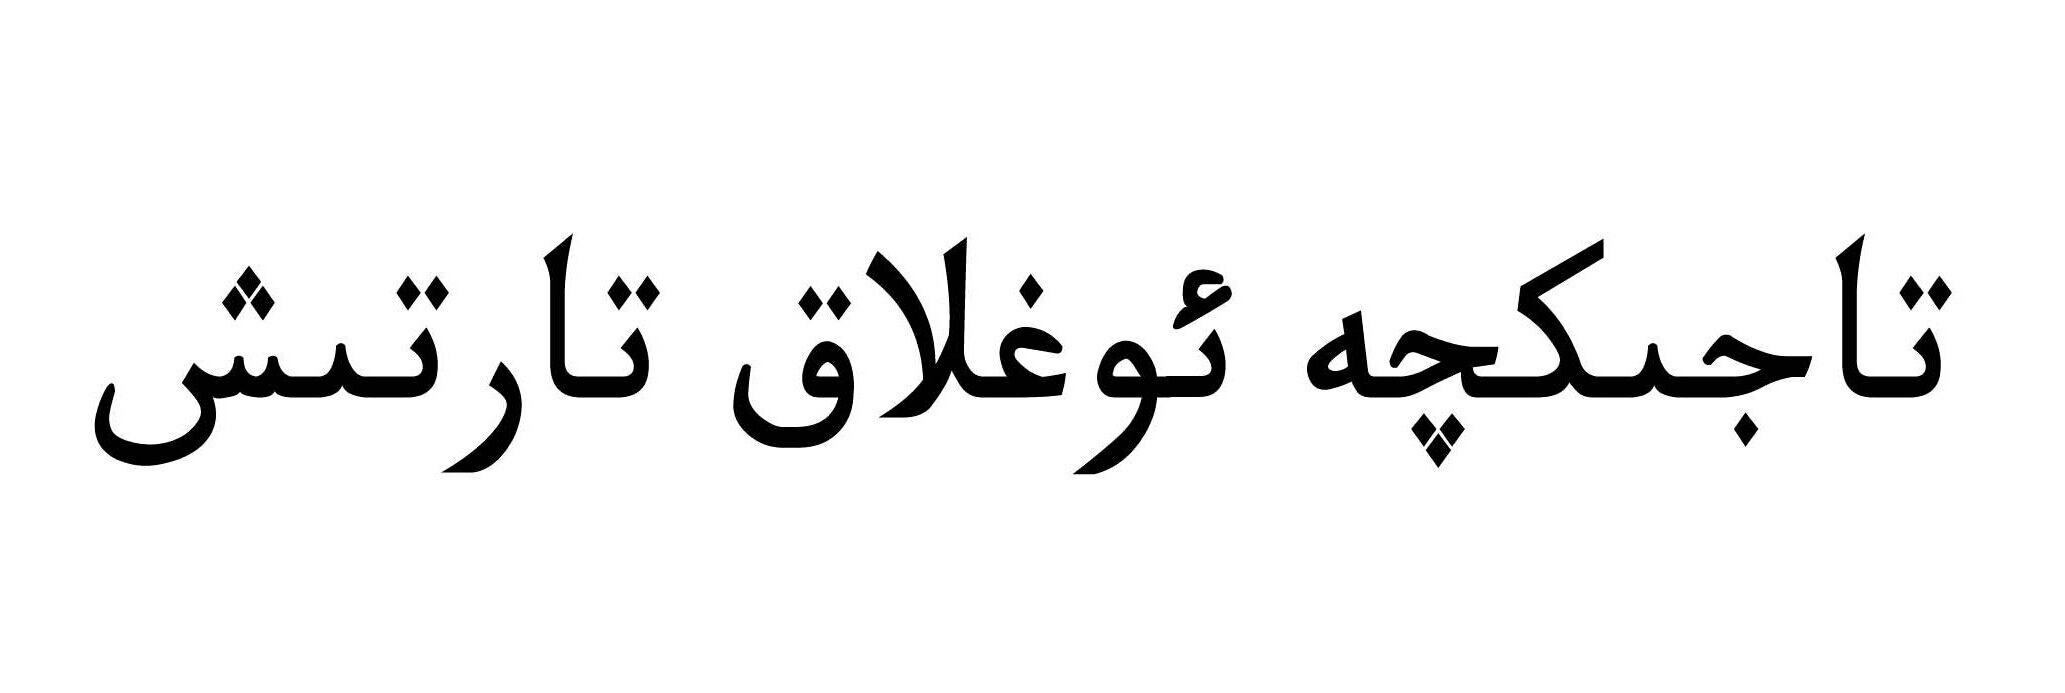 阿拉伯文字特殊符号图片